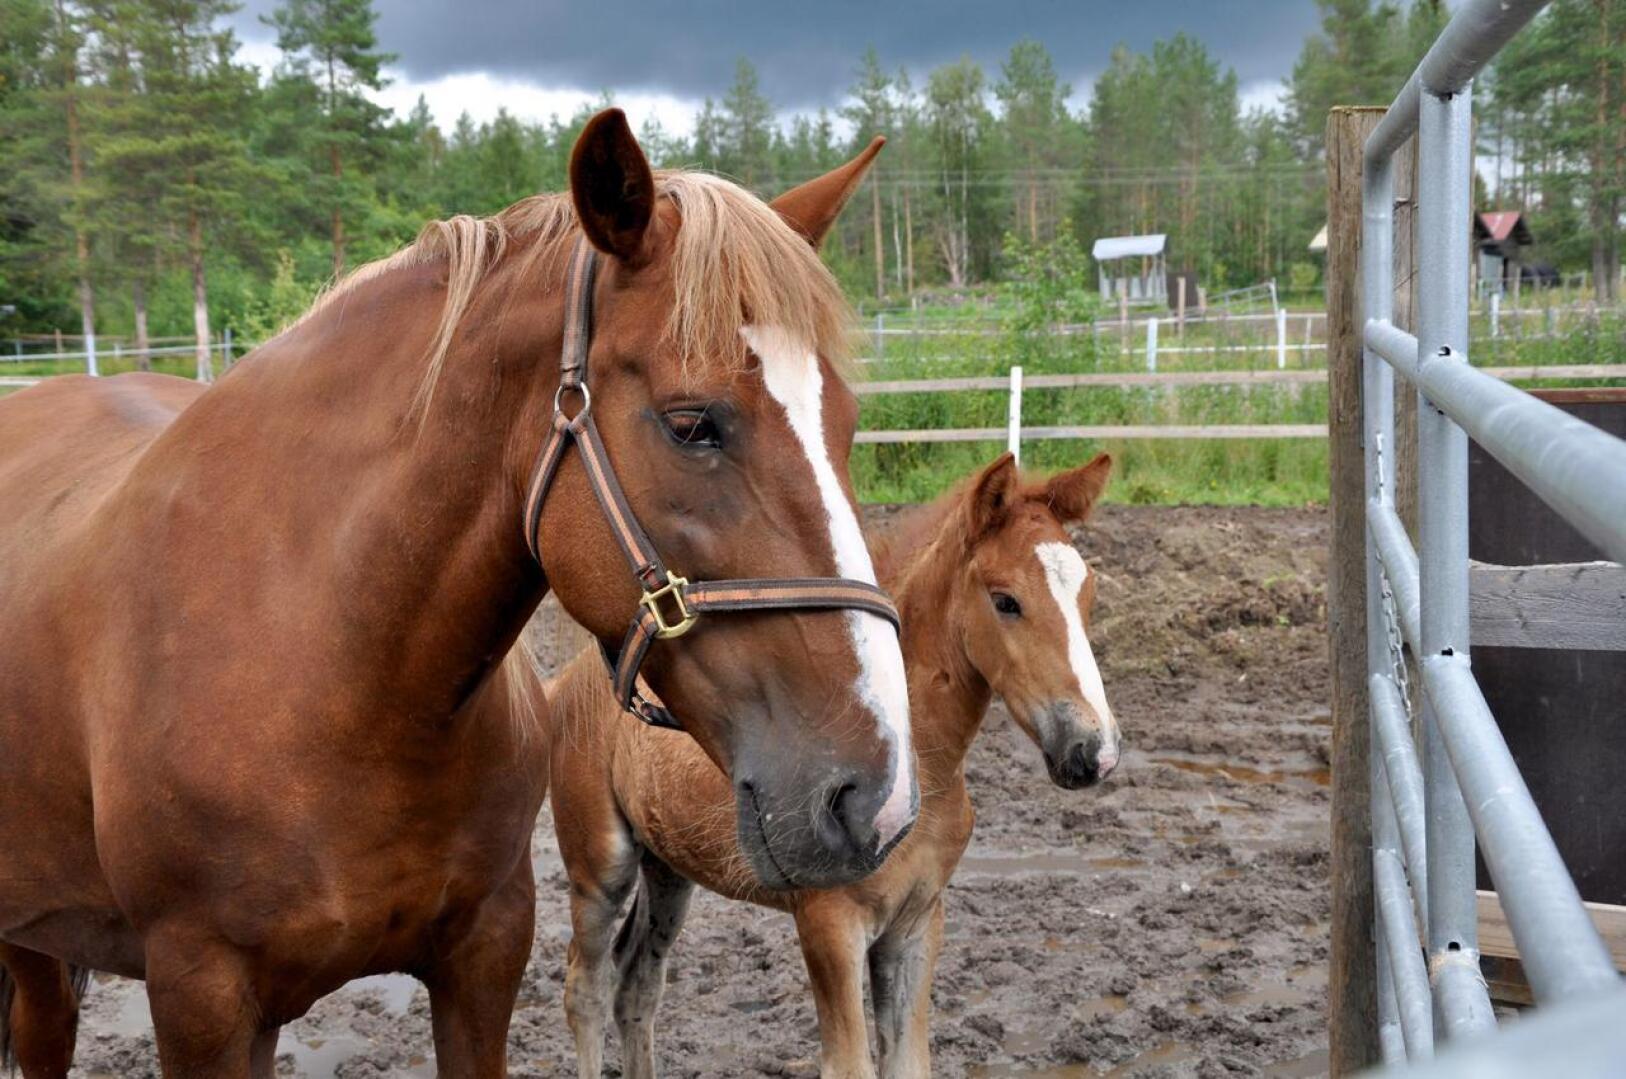 Rovaniemen hovioikeuden päätöksen mukaan yrittäjä oli rikkonut työturvallisuuslakia muun muassa kun ei ollut korjannut ulkotarhan nauha-aitaa riittävän vahvaksi. Arkistokuvan hevoset ja tarha eivät liity tapaukseen.